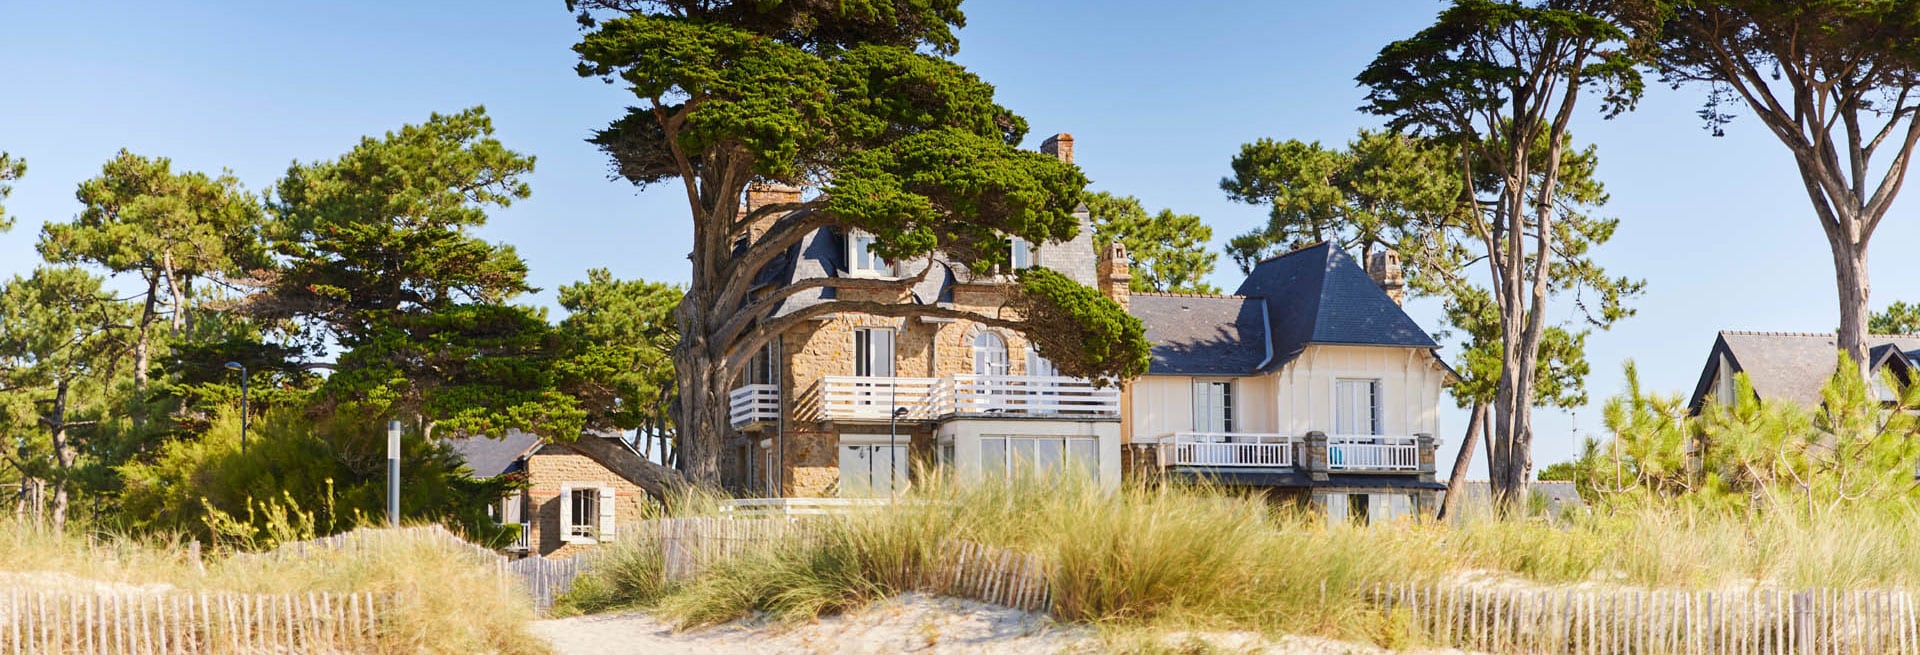 Villas du front de mer à Carnac copyright Alexandre Lamoureux